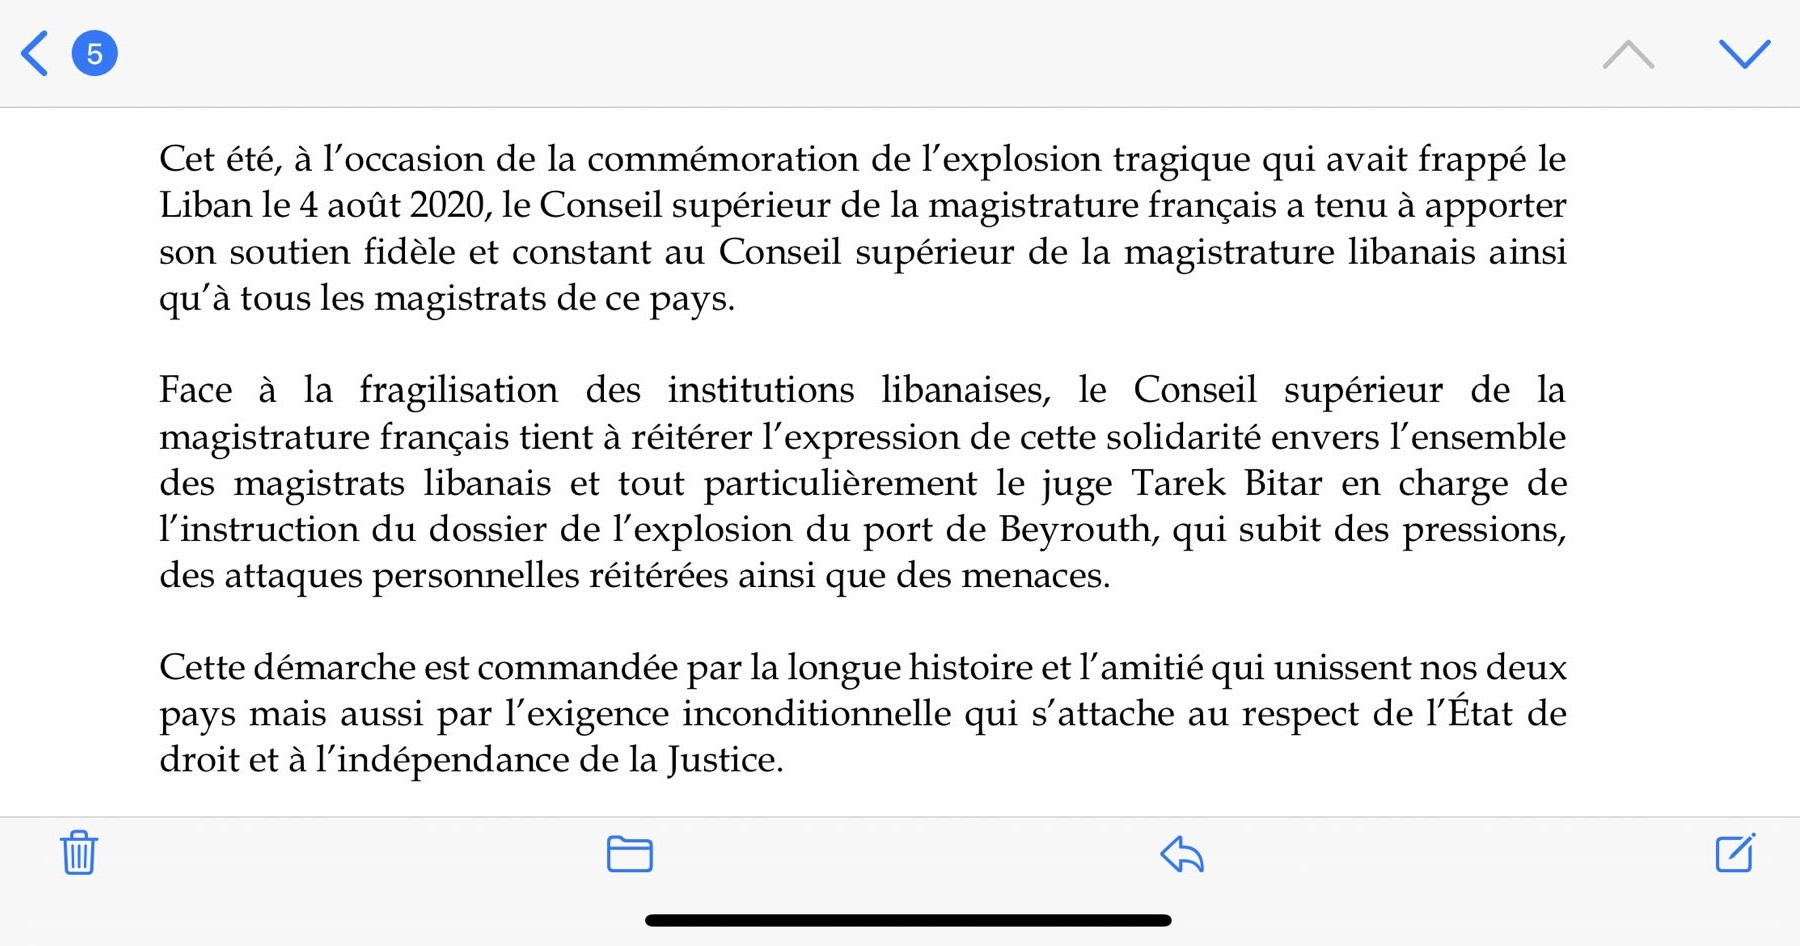 رسالة دعم من مجلس القضاء الأعلى في فرنسا للقاضي البيطار